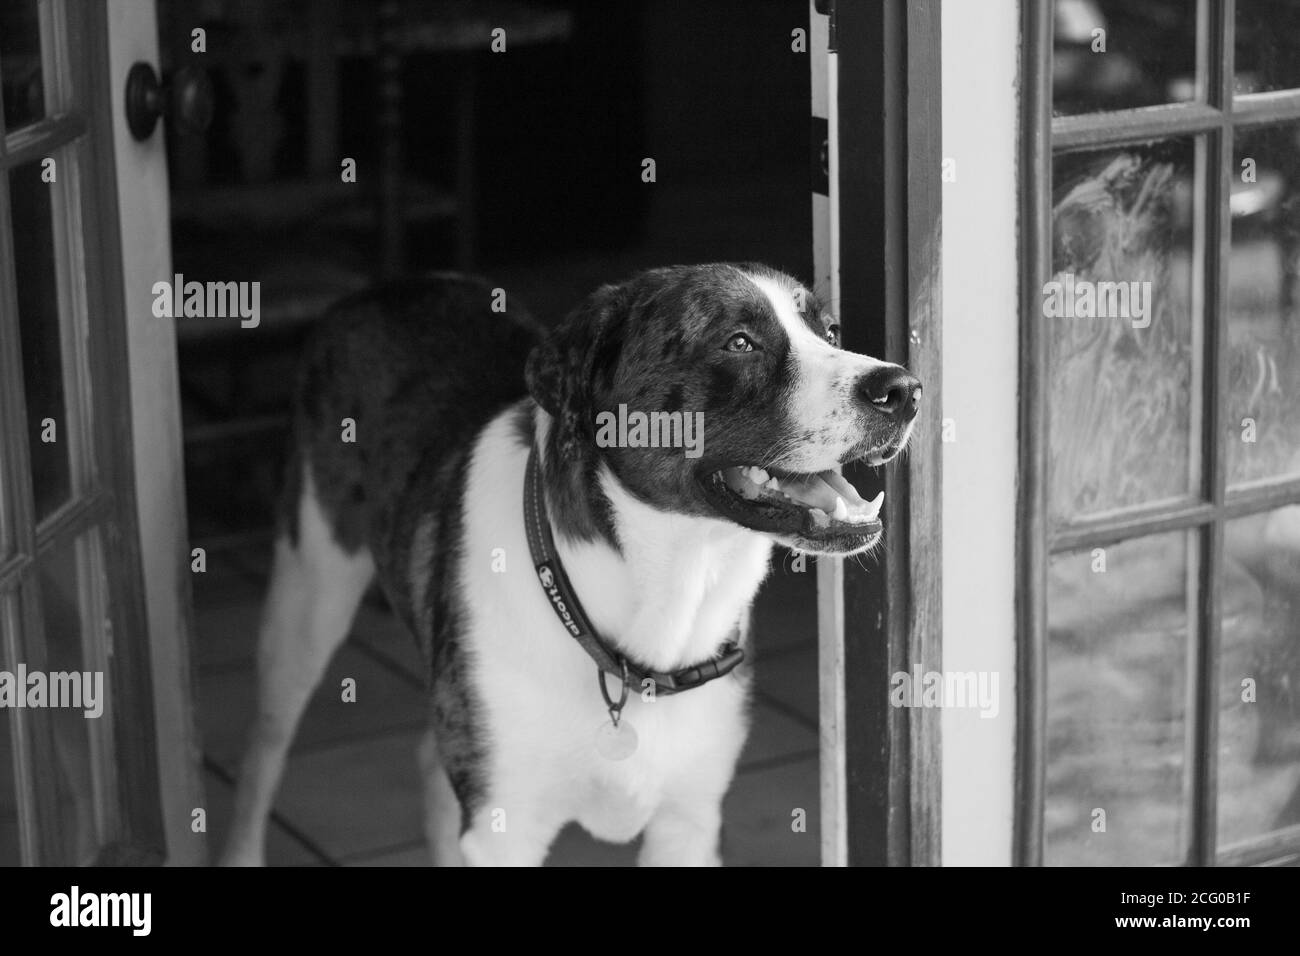 Great Pyrenees Mix Dog, vue de la porte en noir et blanc Banque D'Images